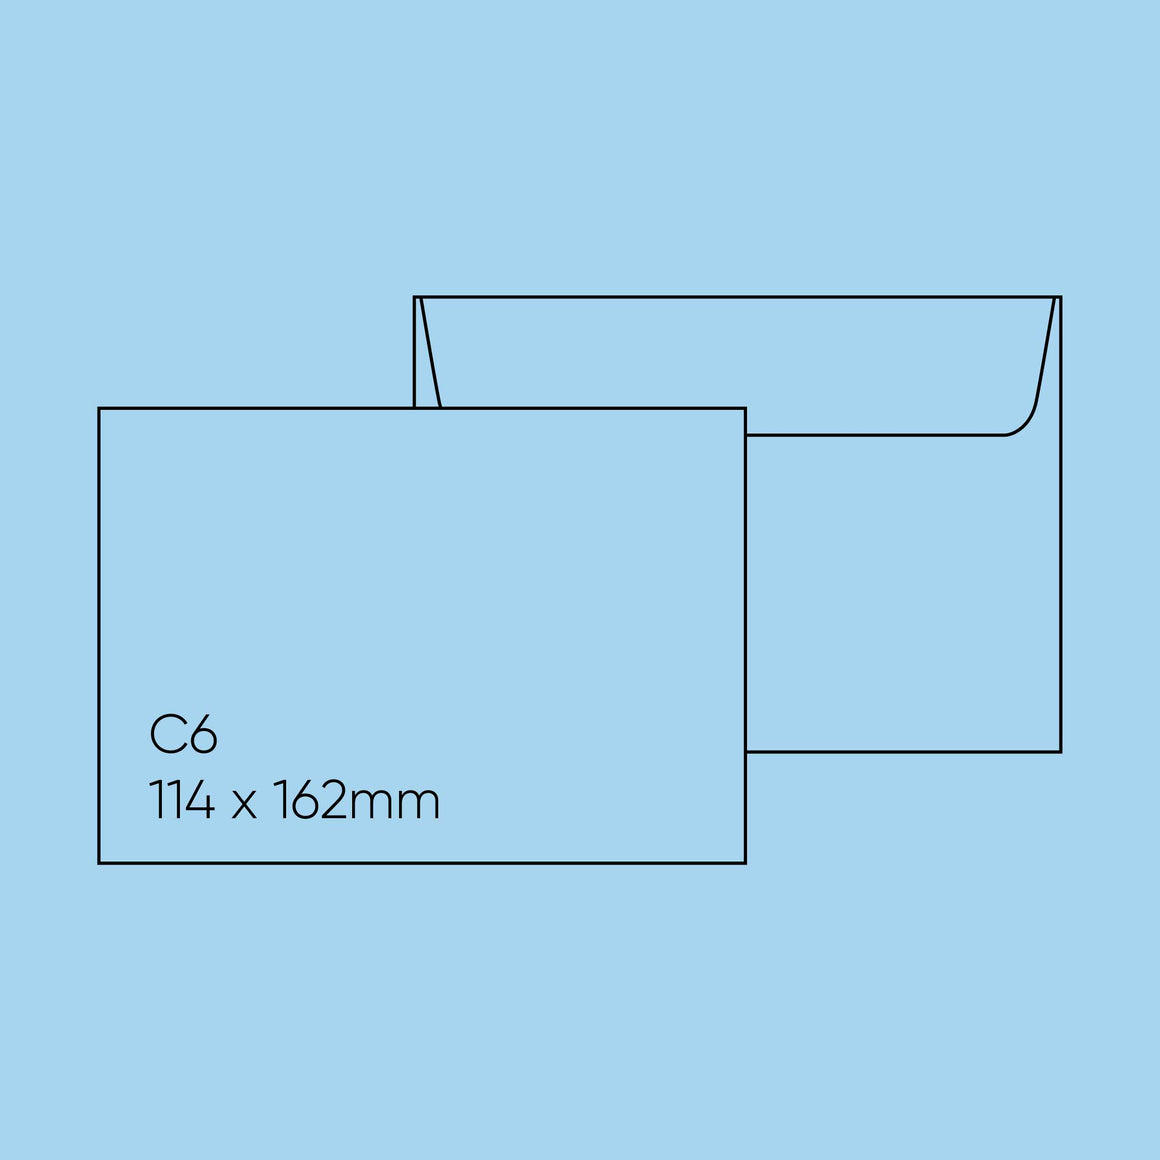 C6 Envelope (114x162mm) - Popticks, Ocean Blue, Pack of 10